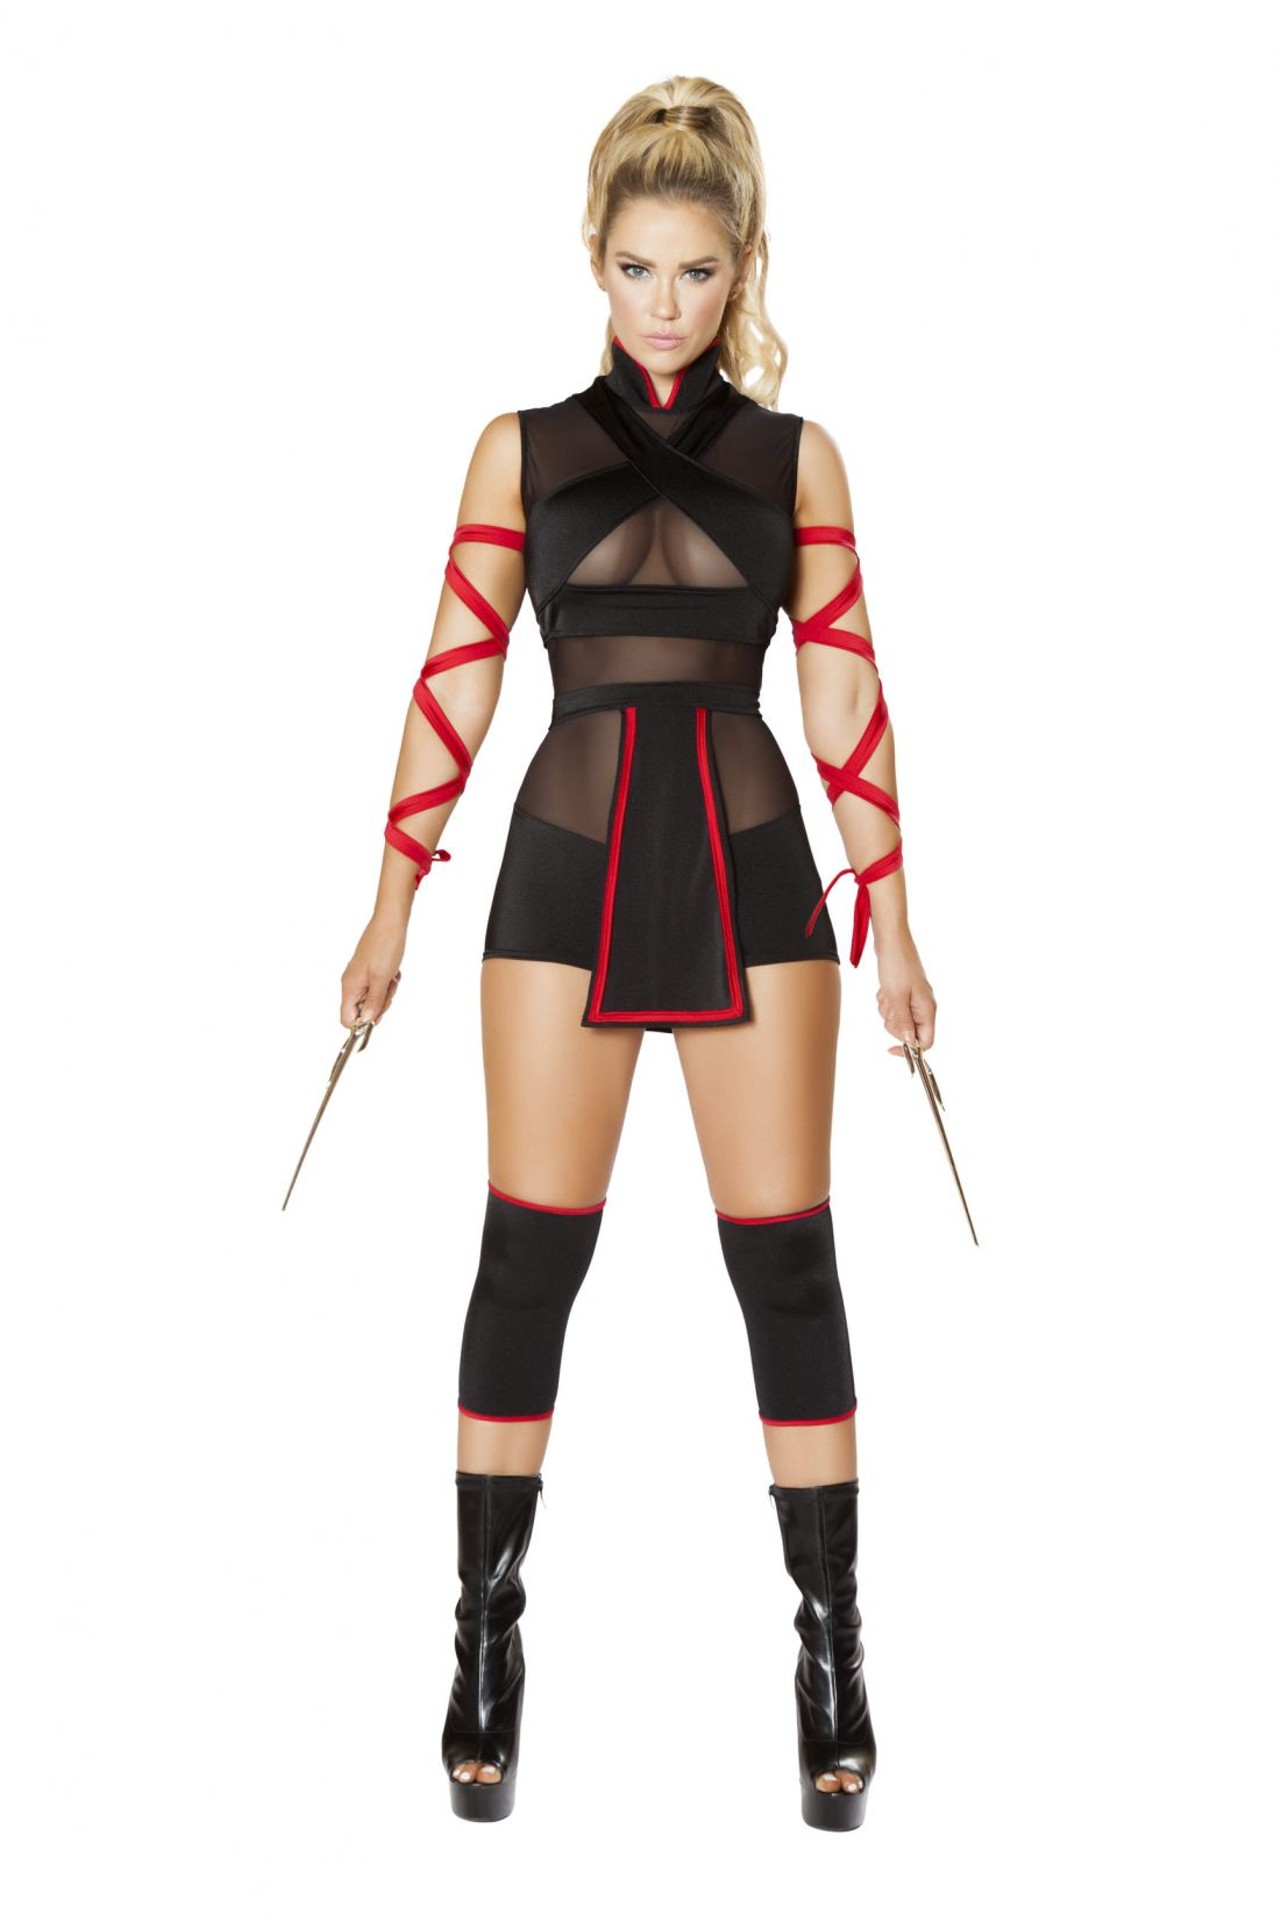 Ninja Striker - 3-piece costume; $69